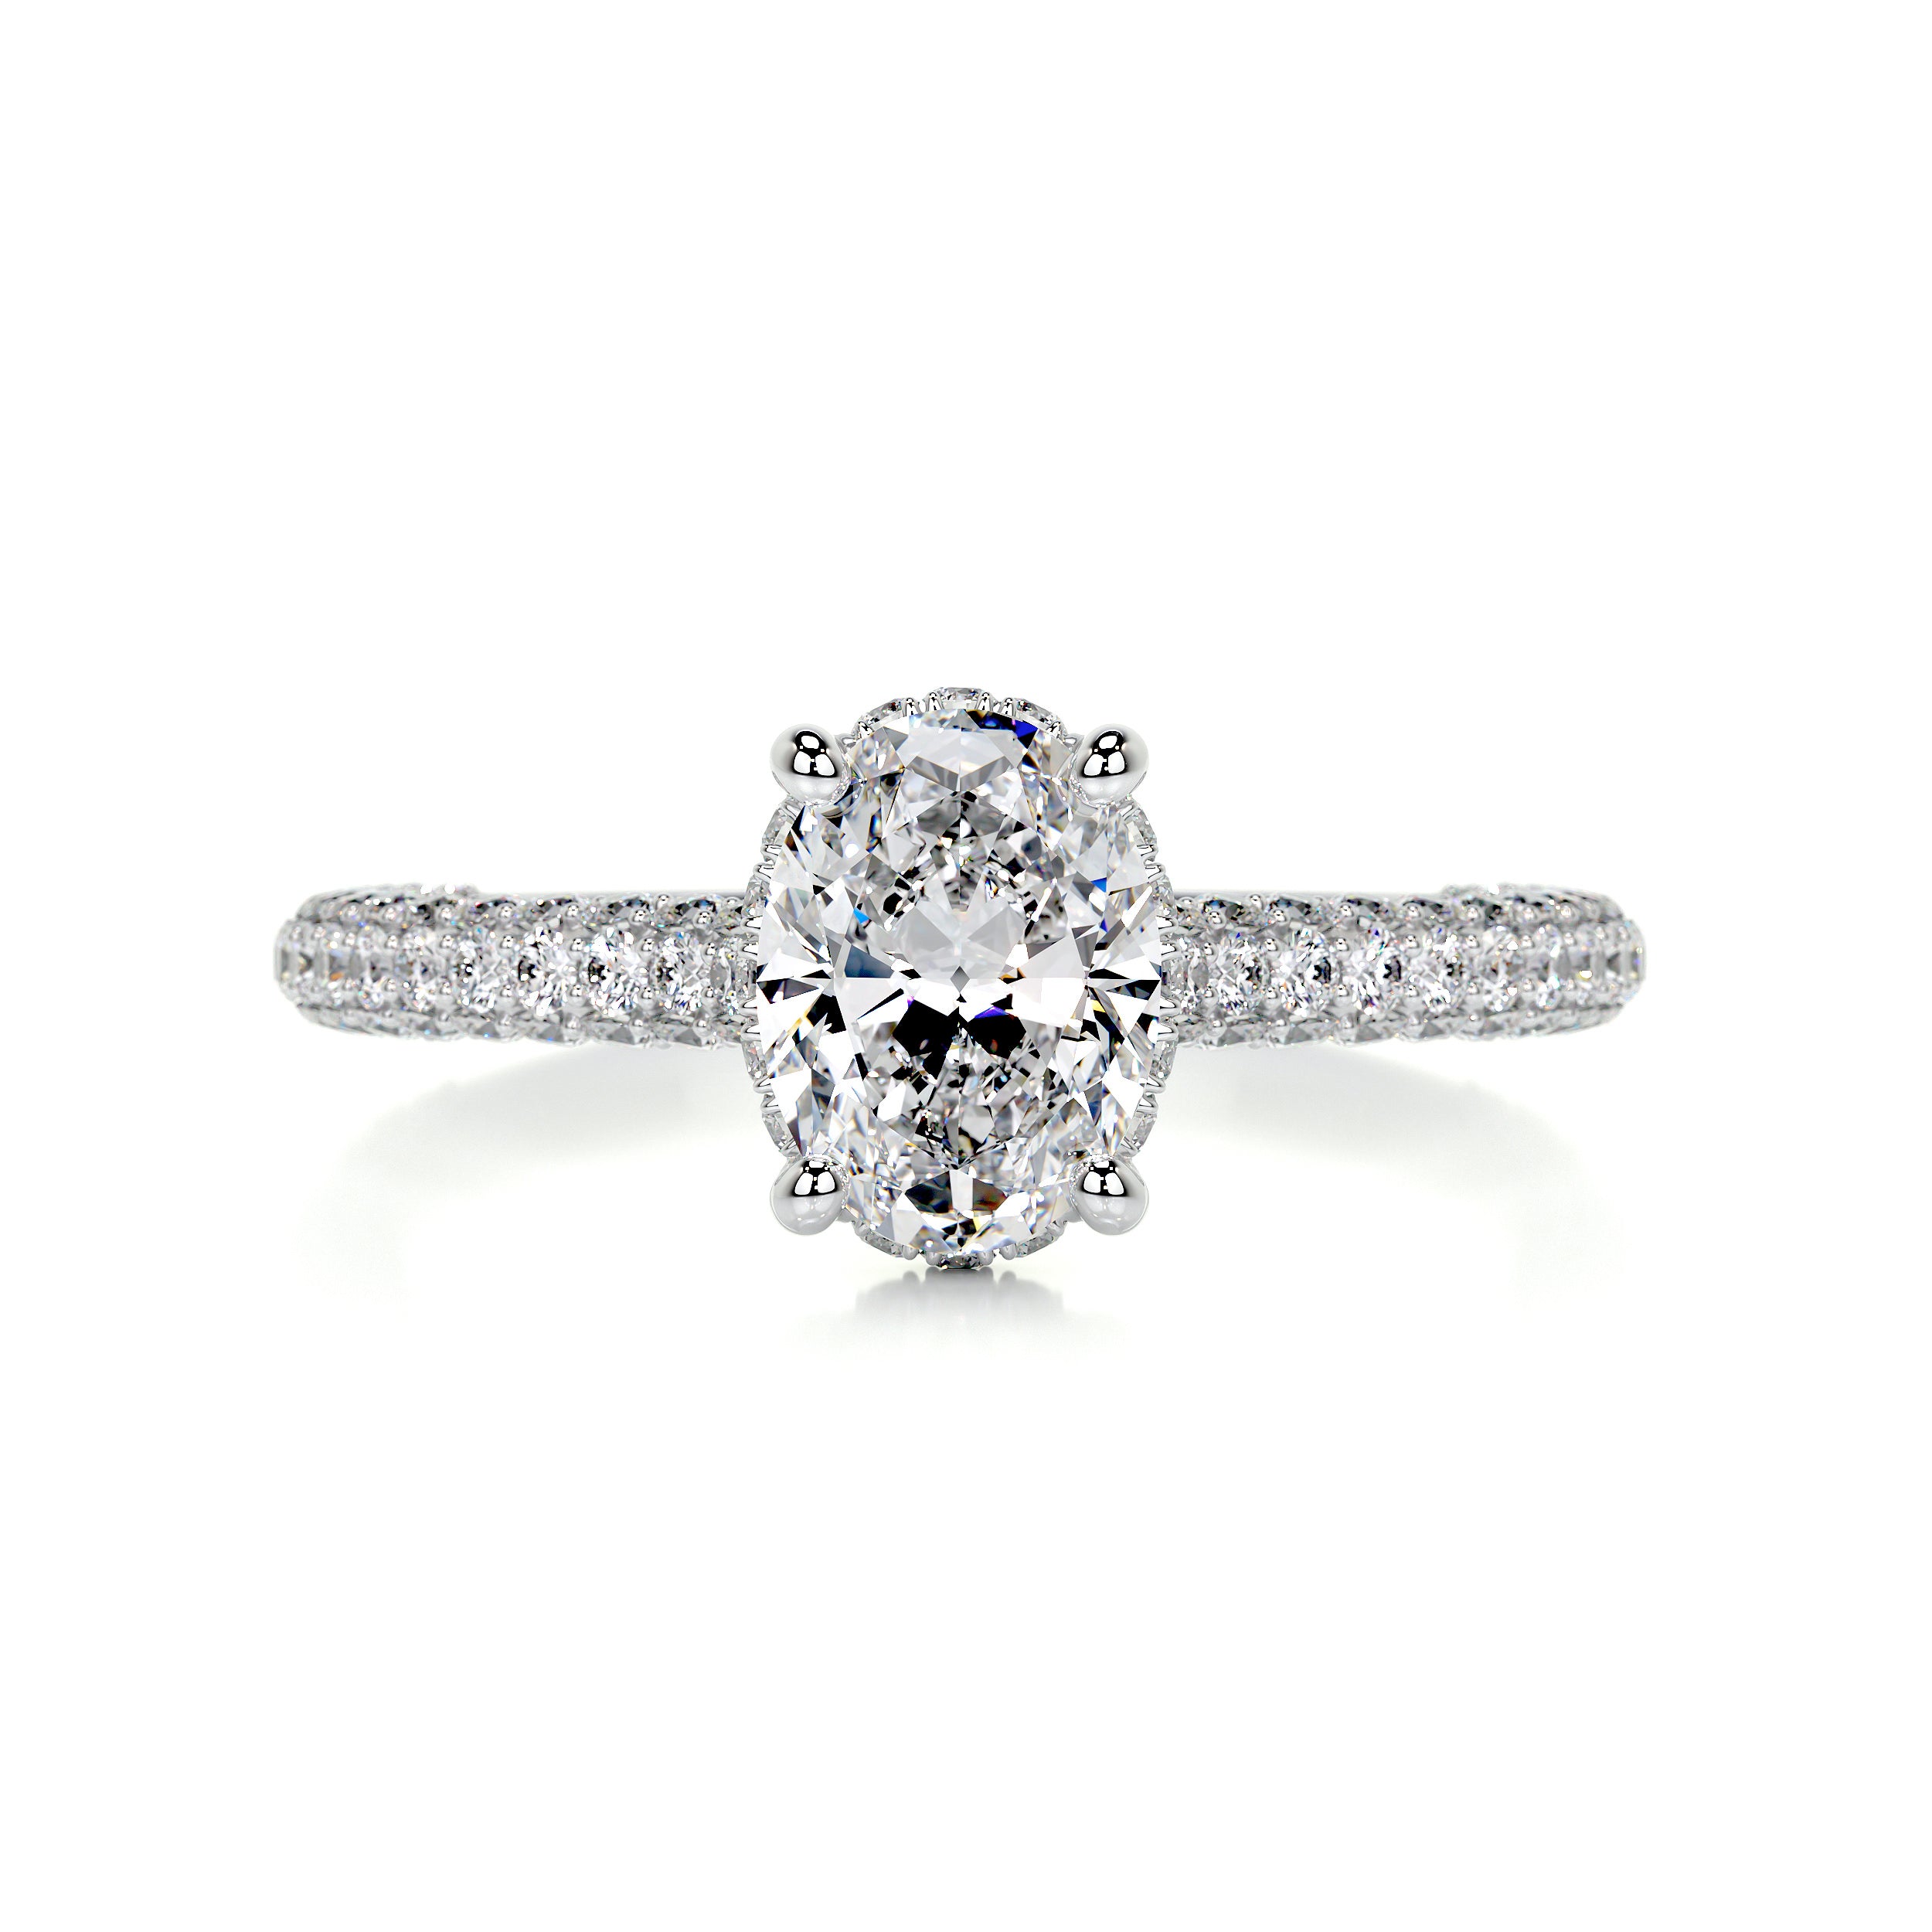 Rebecca Diamond Engagement Ring   (1.8 Carat) -Platinum